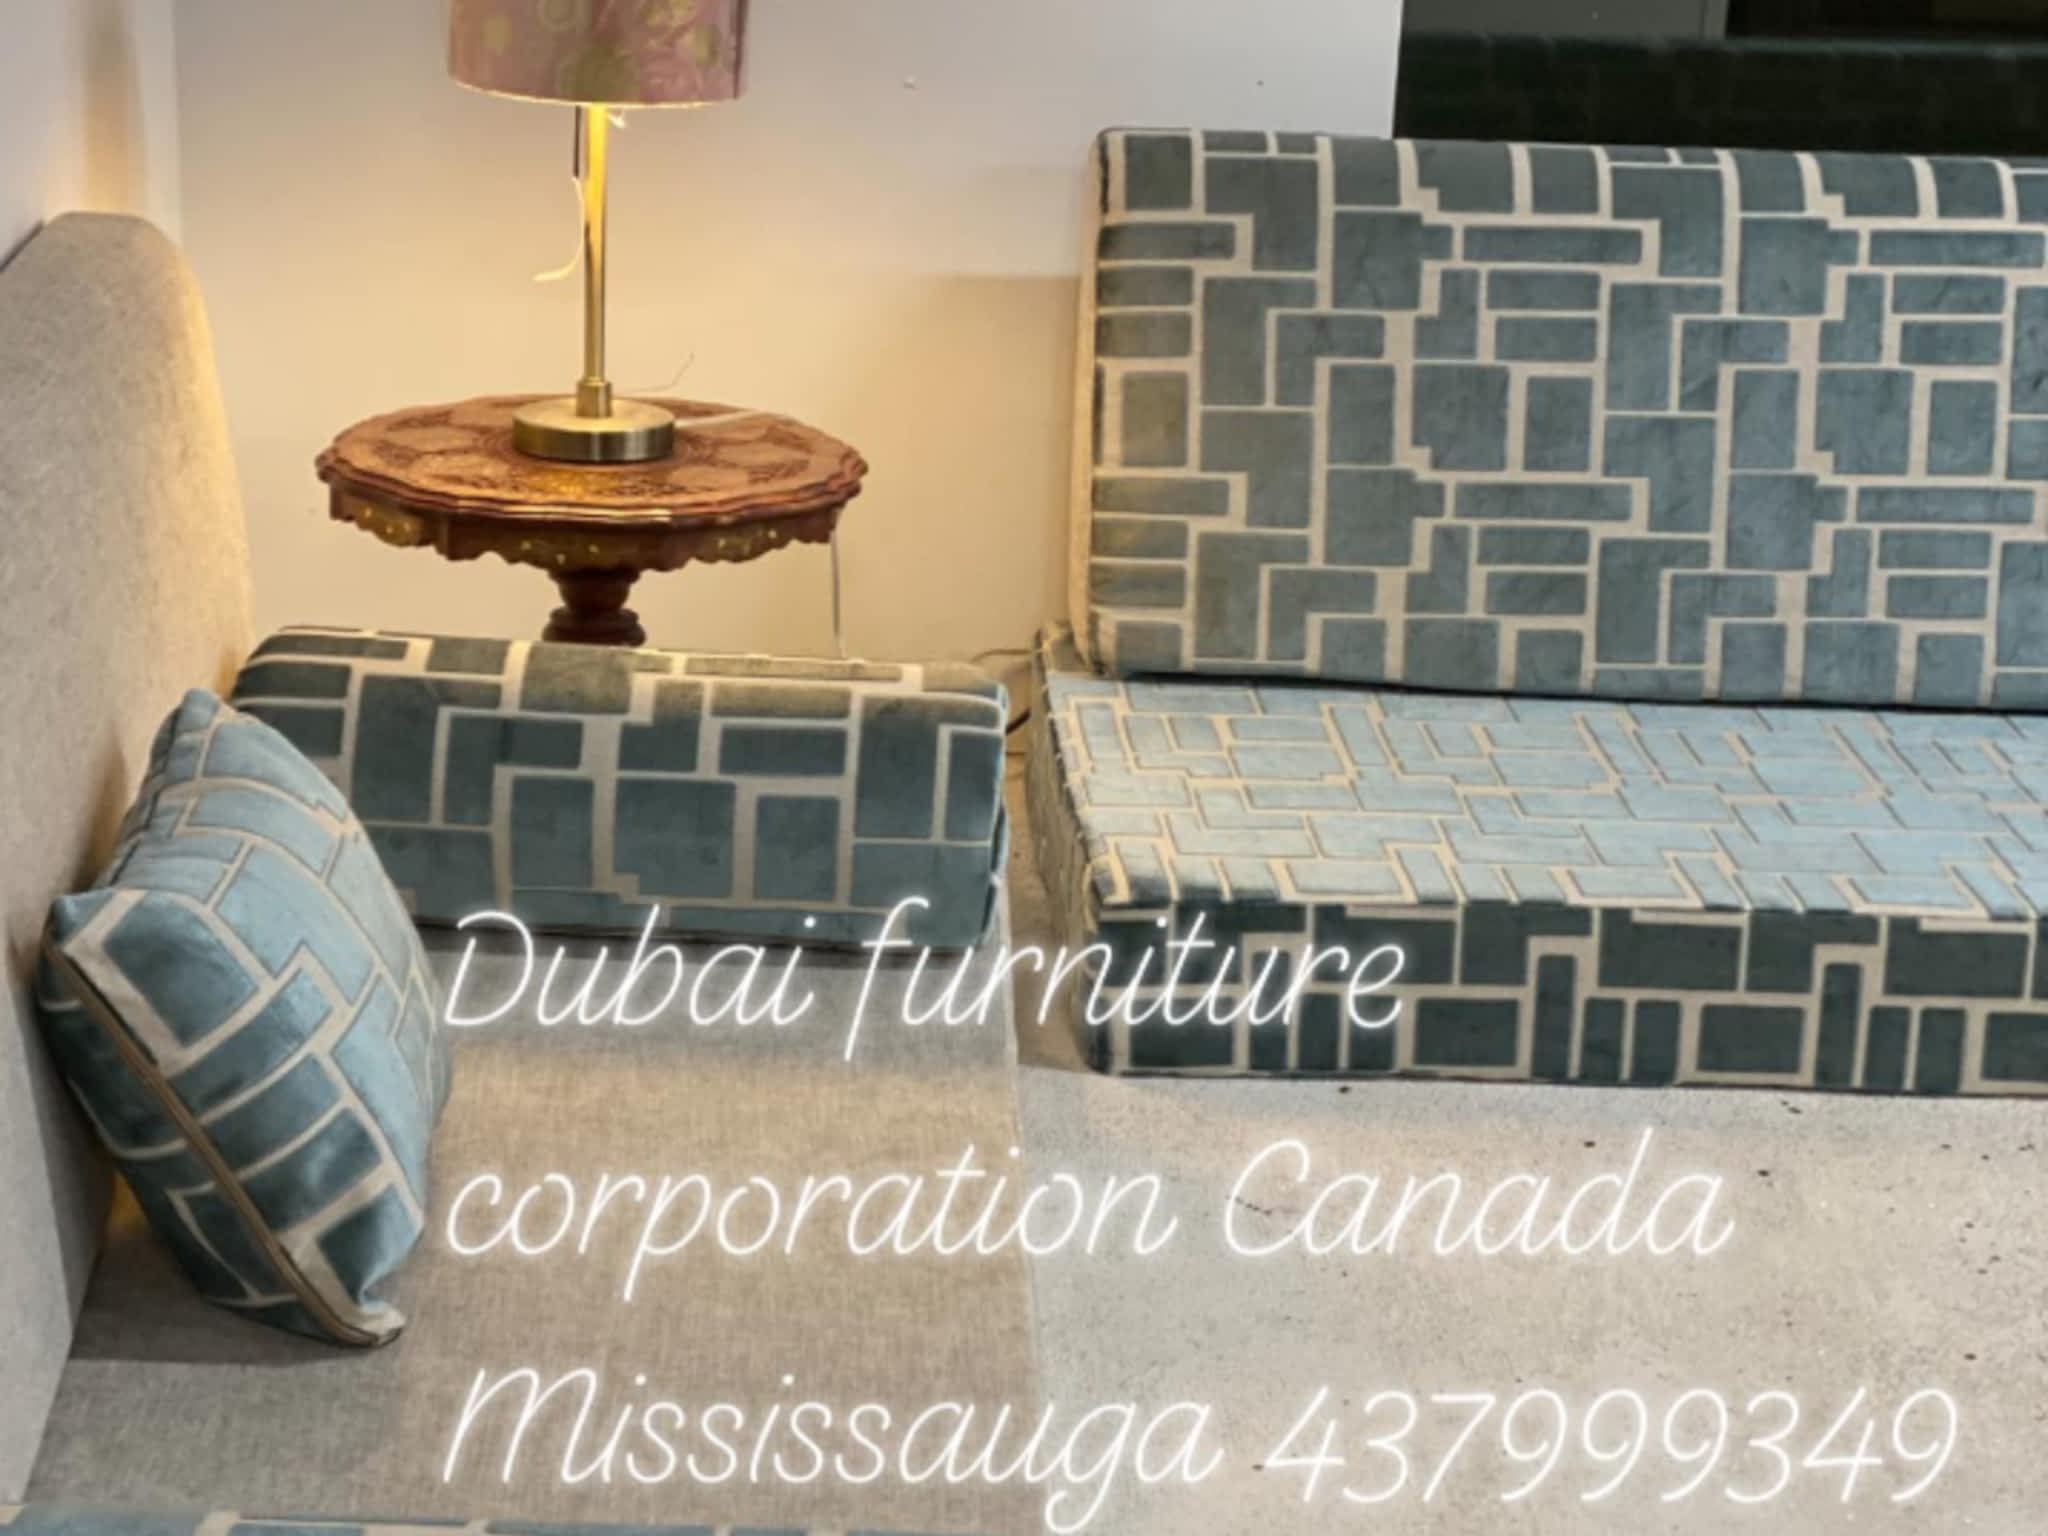 photo Dubai Furniture Corporation Canada